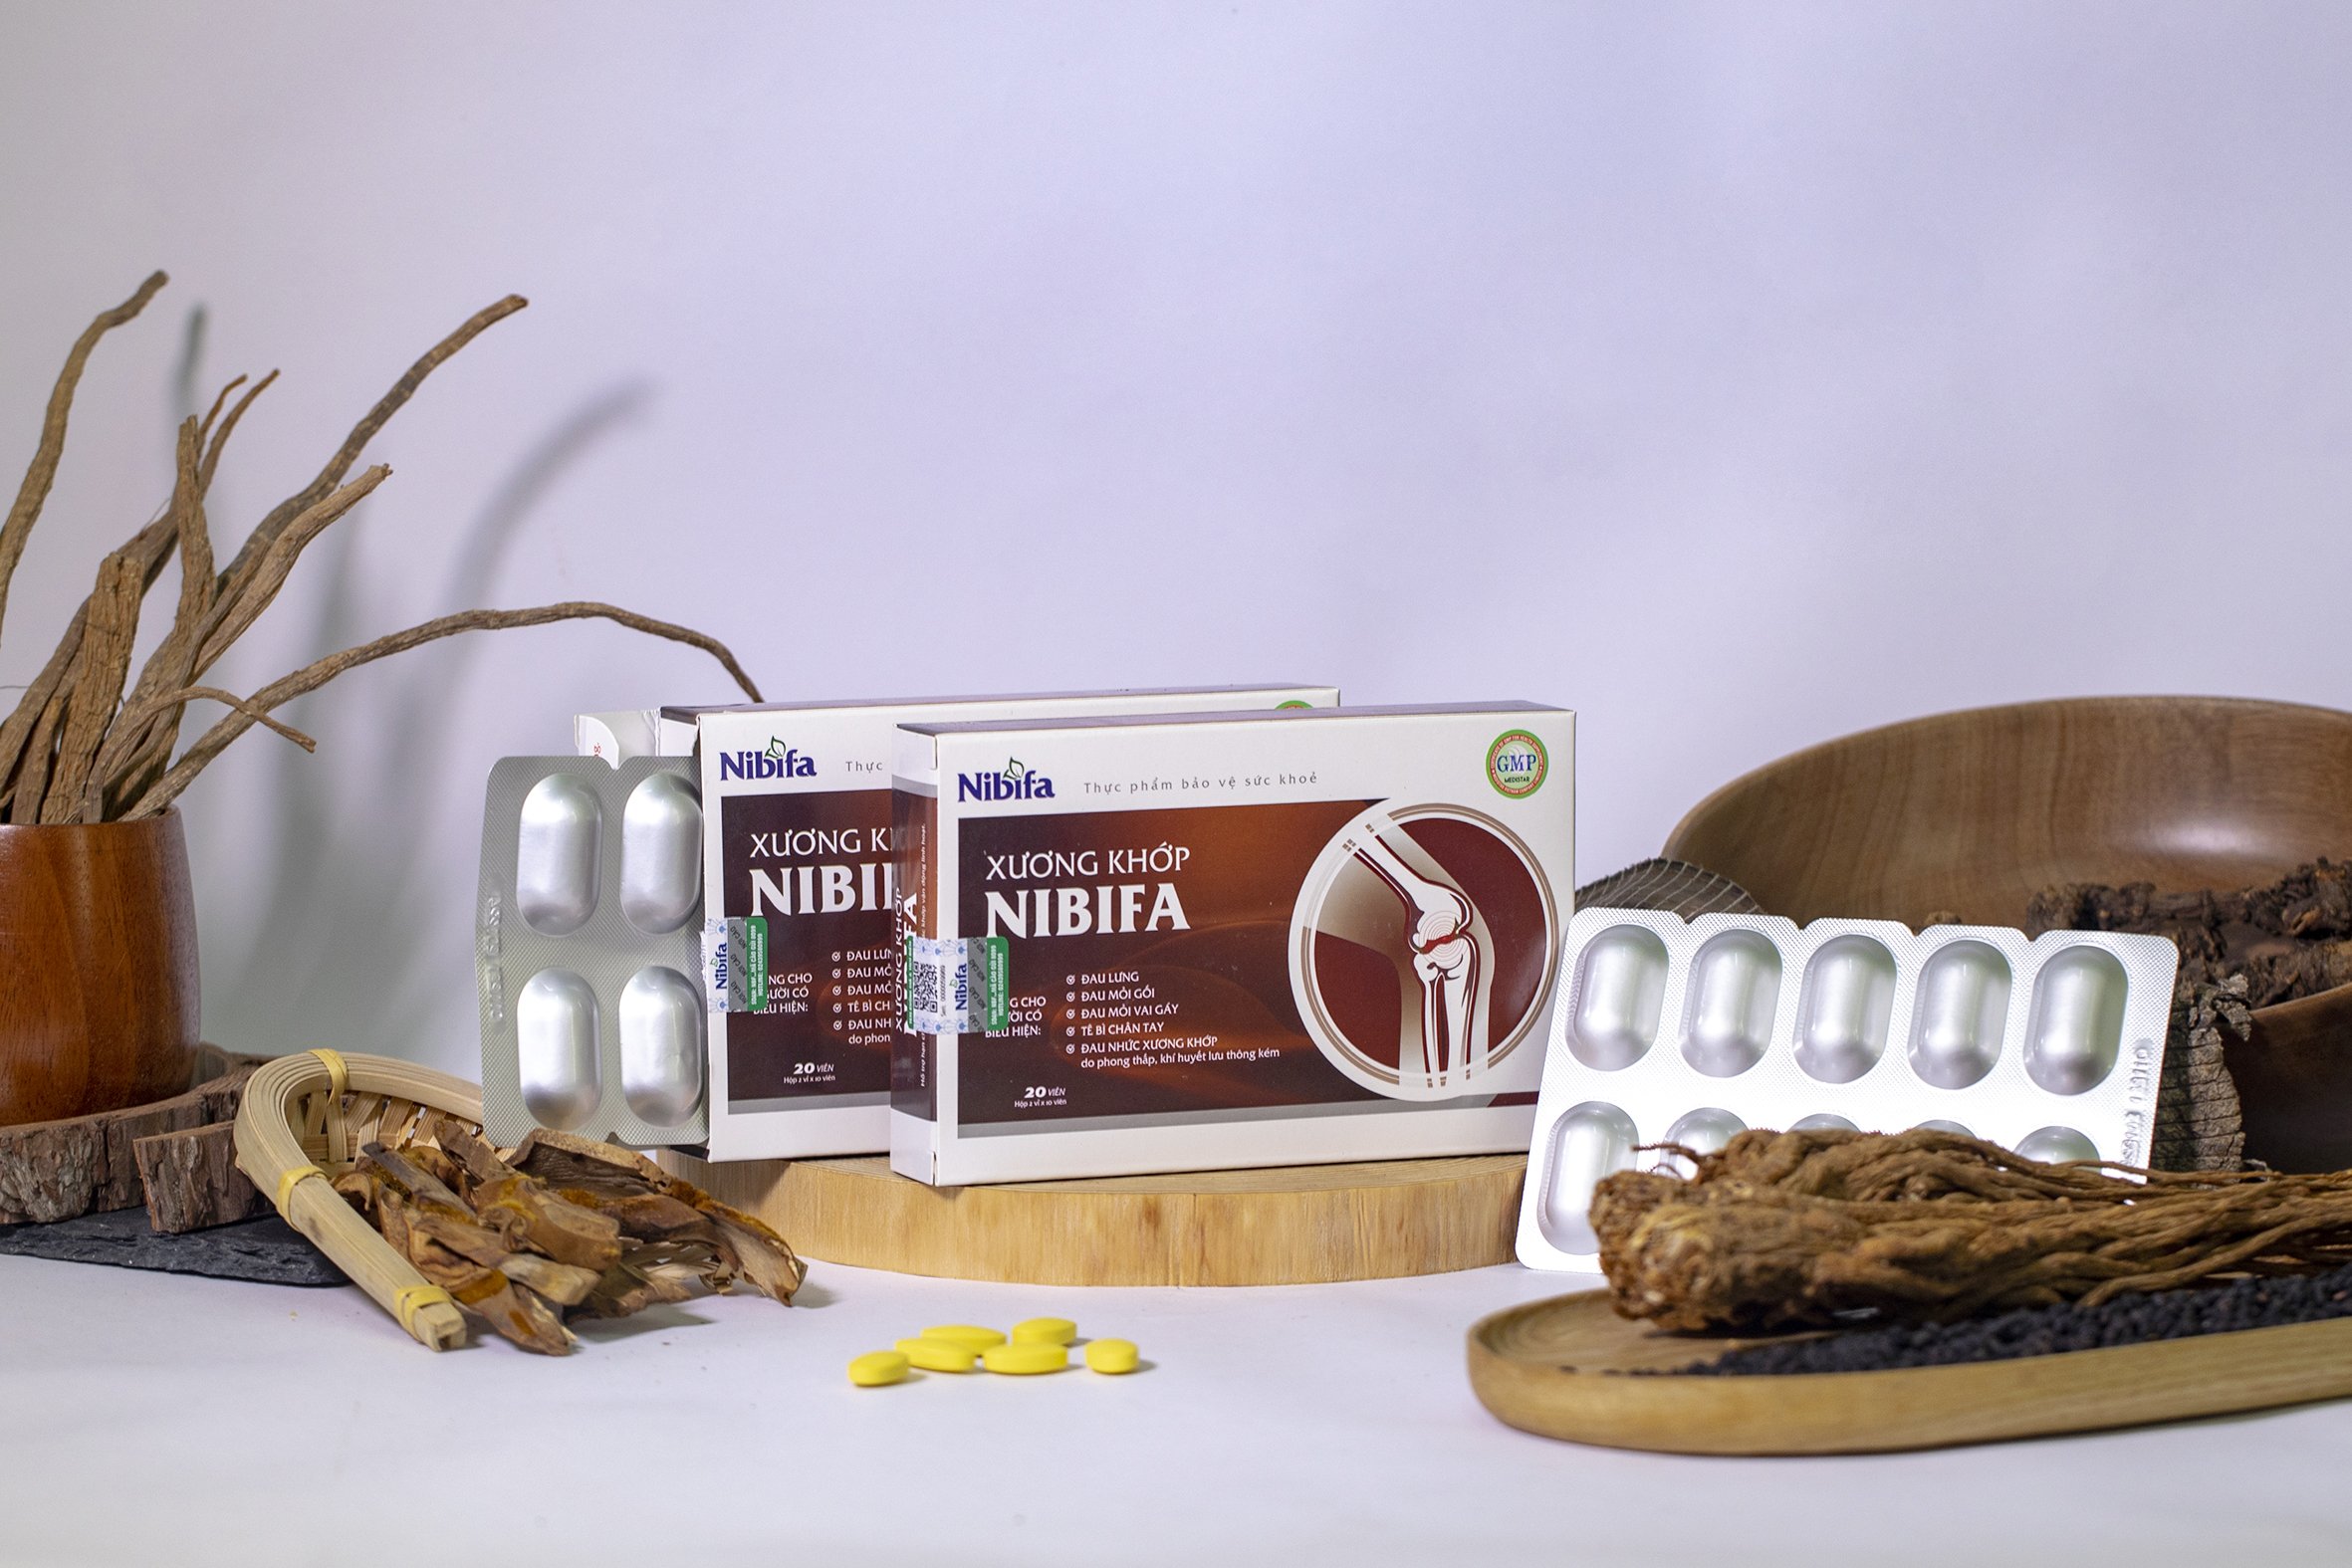 Xương khớp Nibifa – dược liệu tự nhiên hỗ trợ điều trị bệnh lý cơ xương khớp